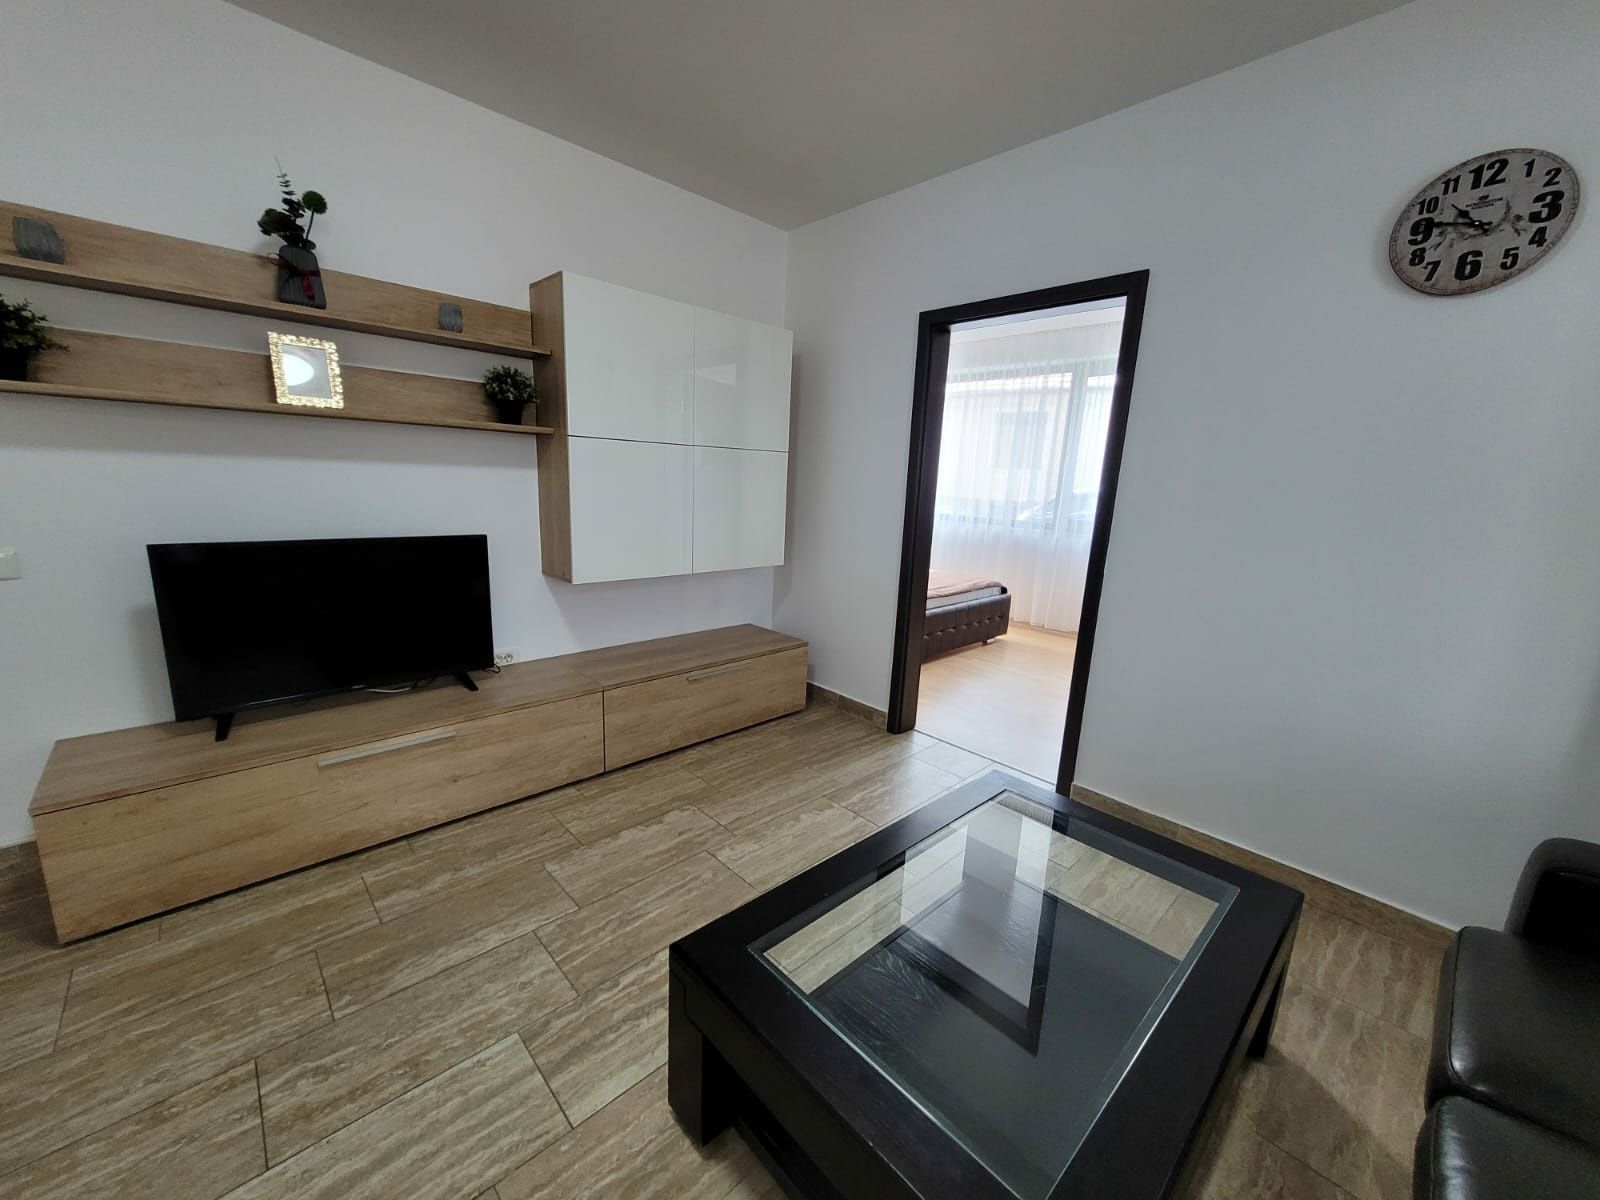 Apartament 2 camere,mobilat,utilat LUXcentru ,DEALUL MORII RESIDENCE